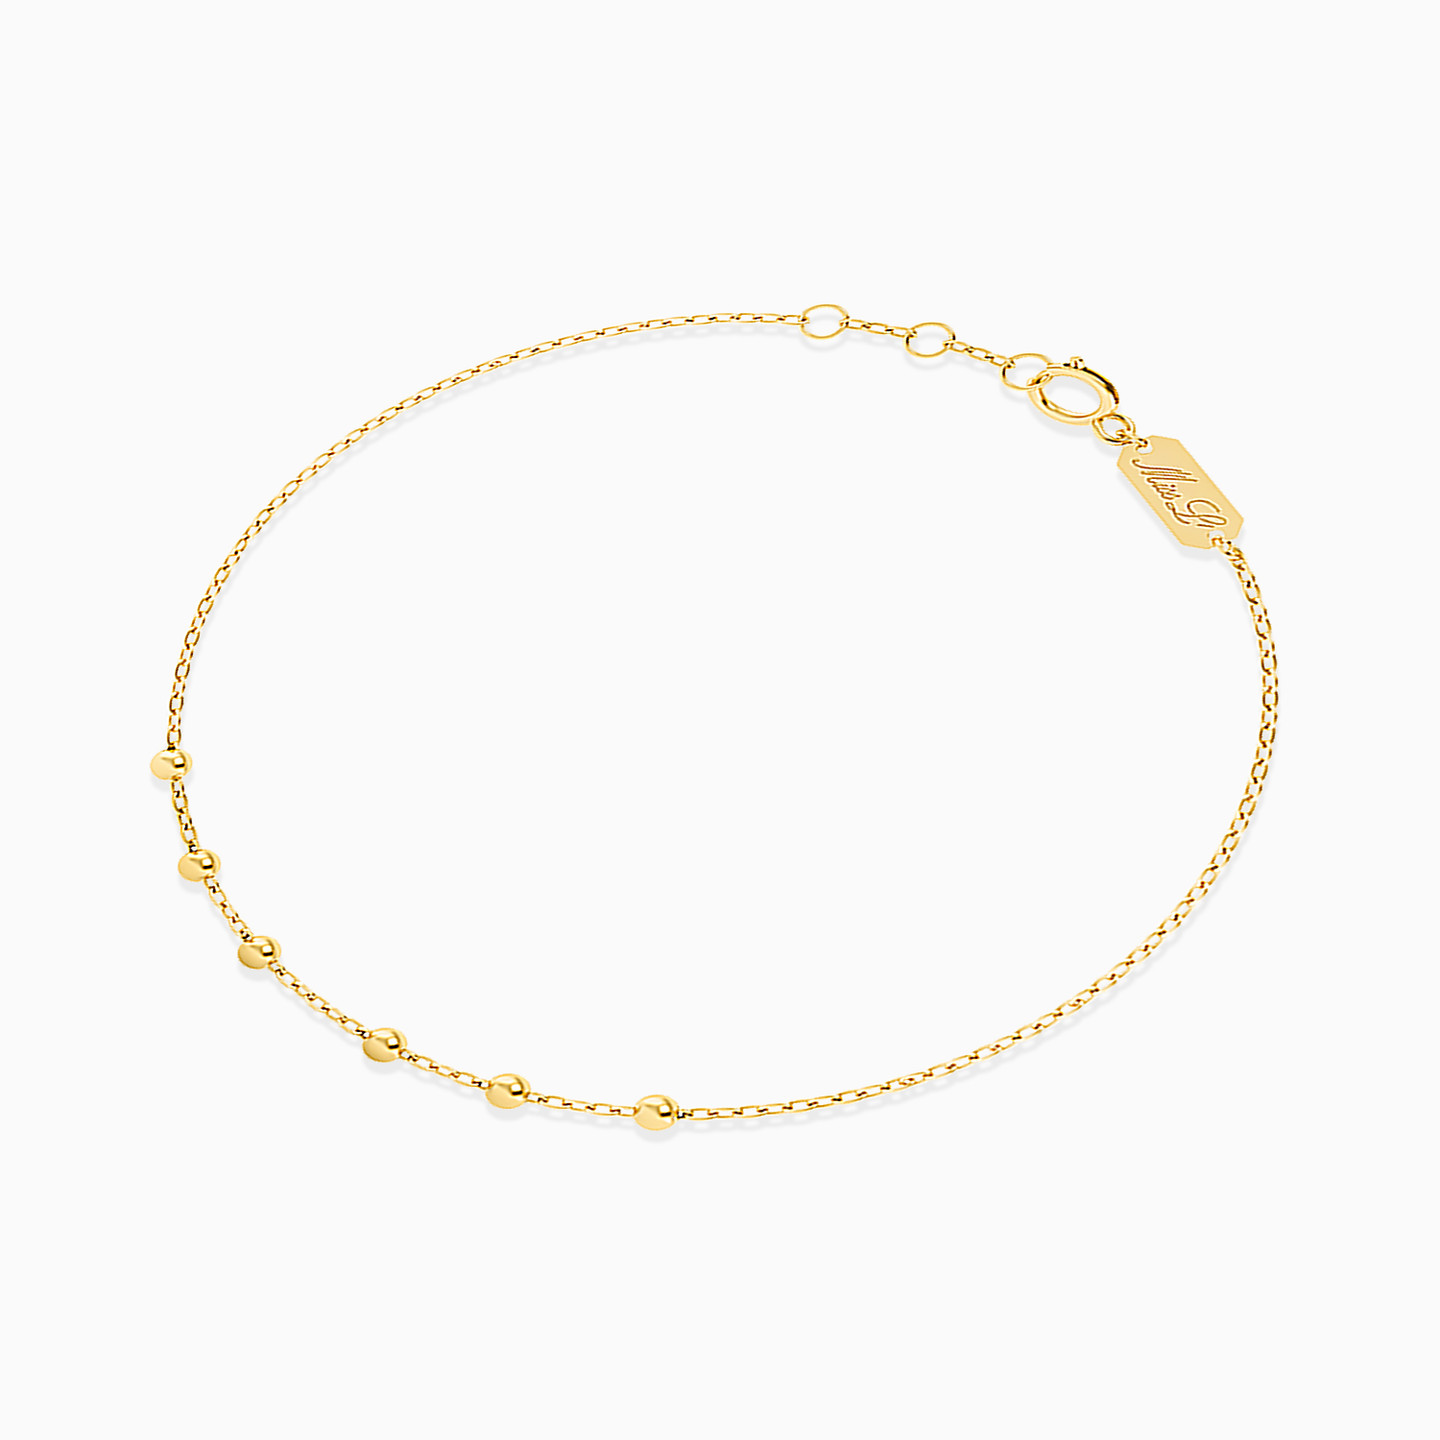 Round Chain Bracelet in 18K Gold - 2